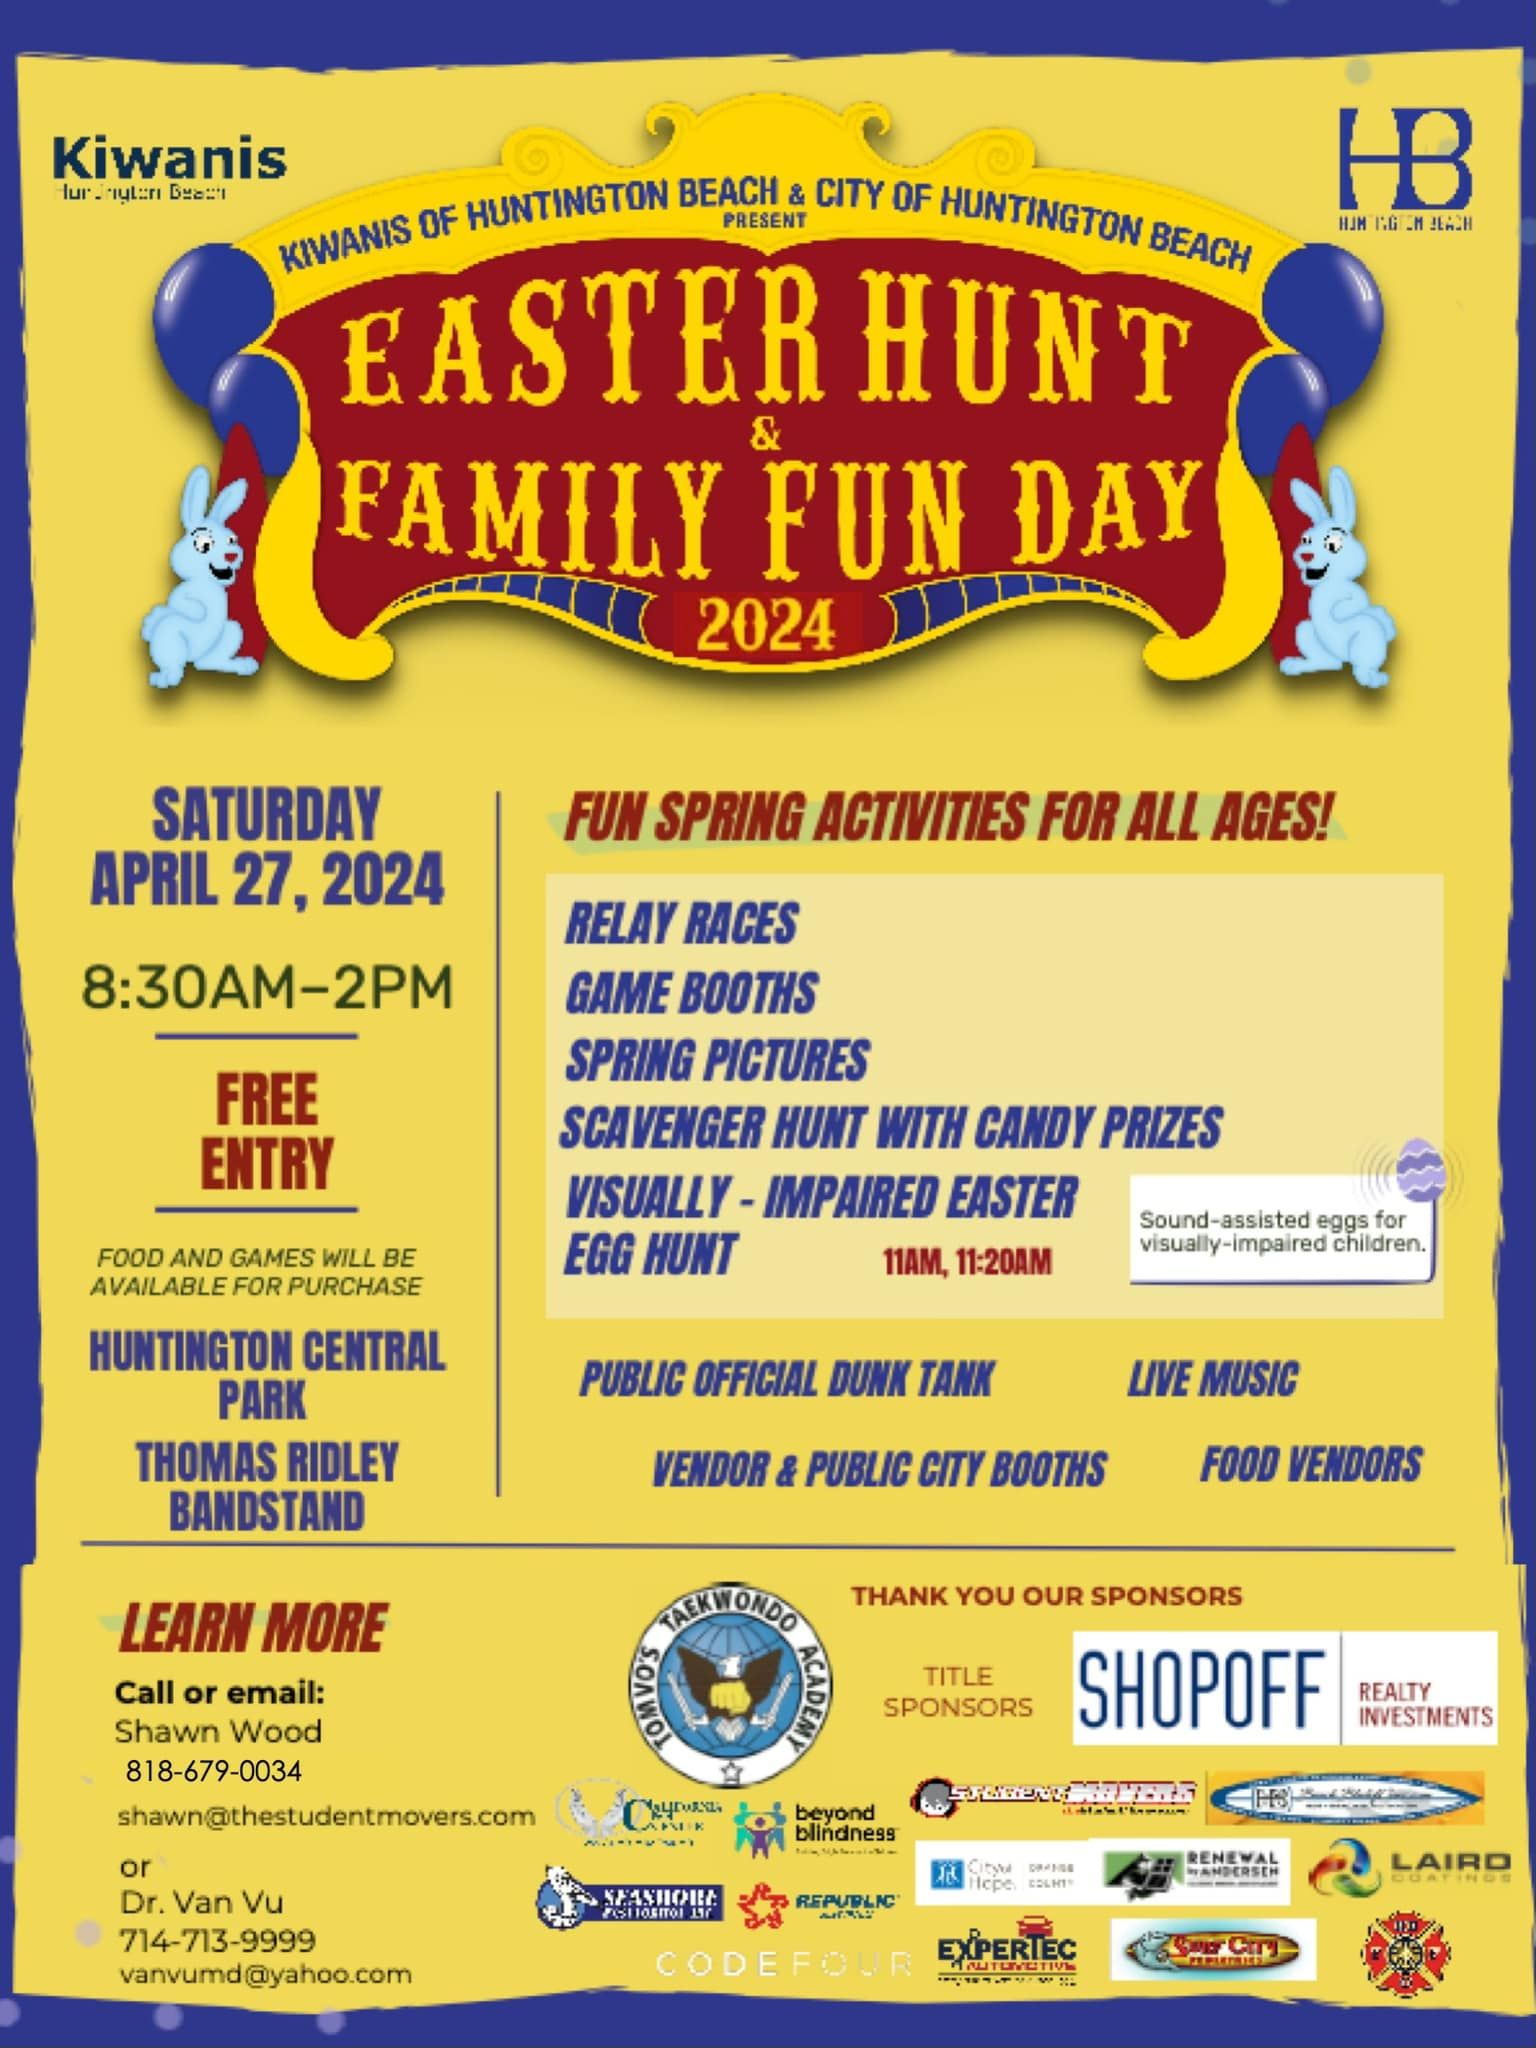 Kiwanis Easter Egg Hunt Family Fun Day